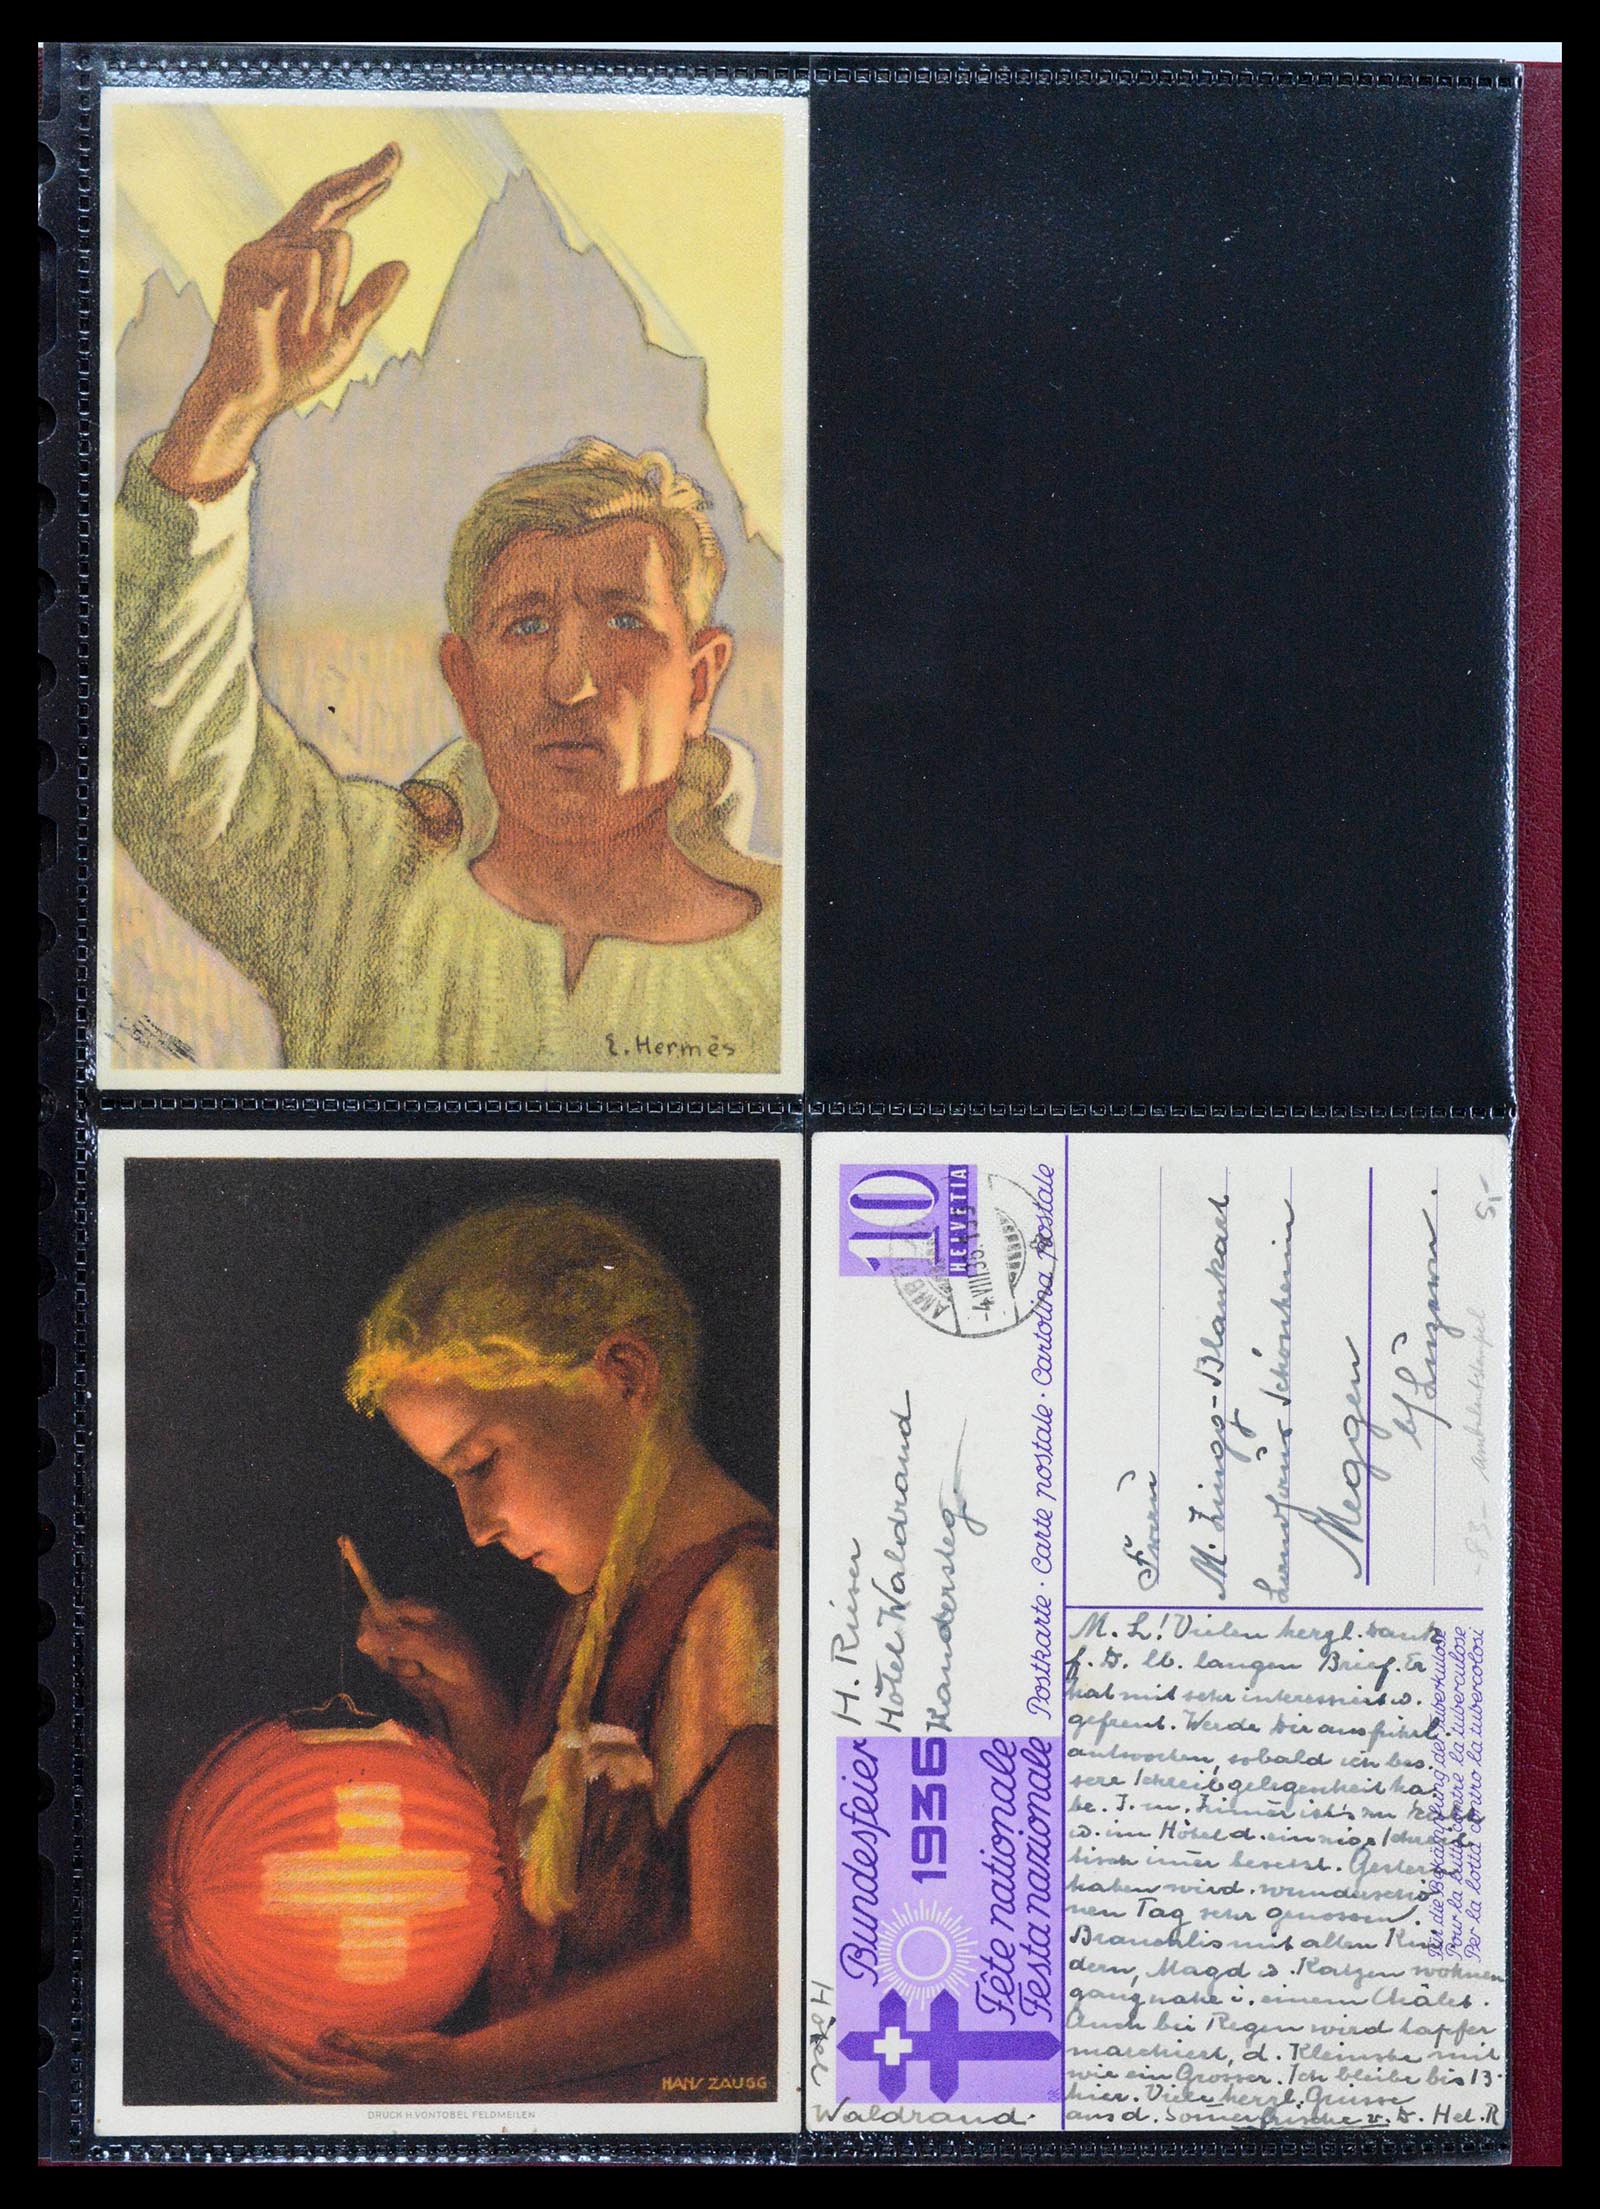 39433 0017 - Stamp collection 39433 Switzerland Bundesfeier cards 1910-1937.